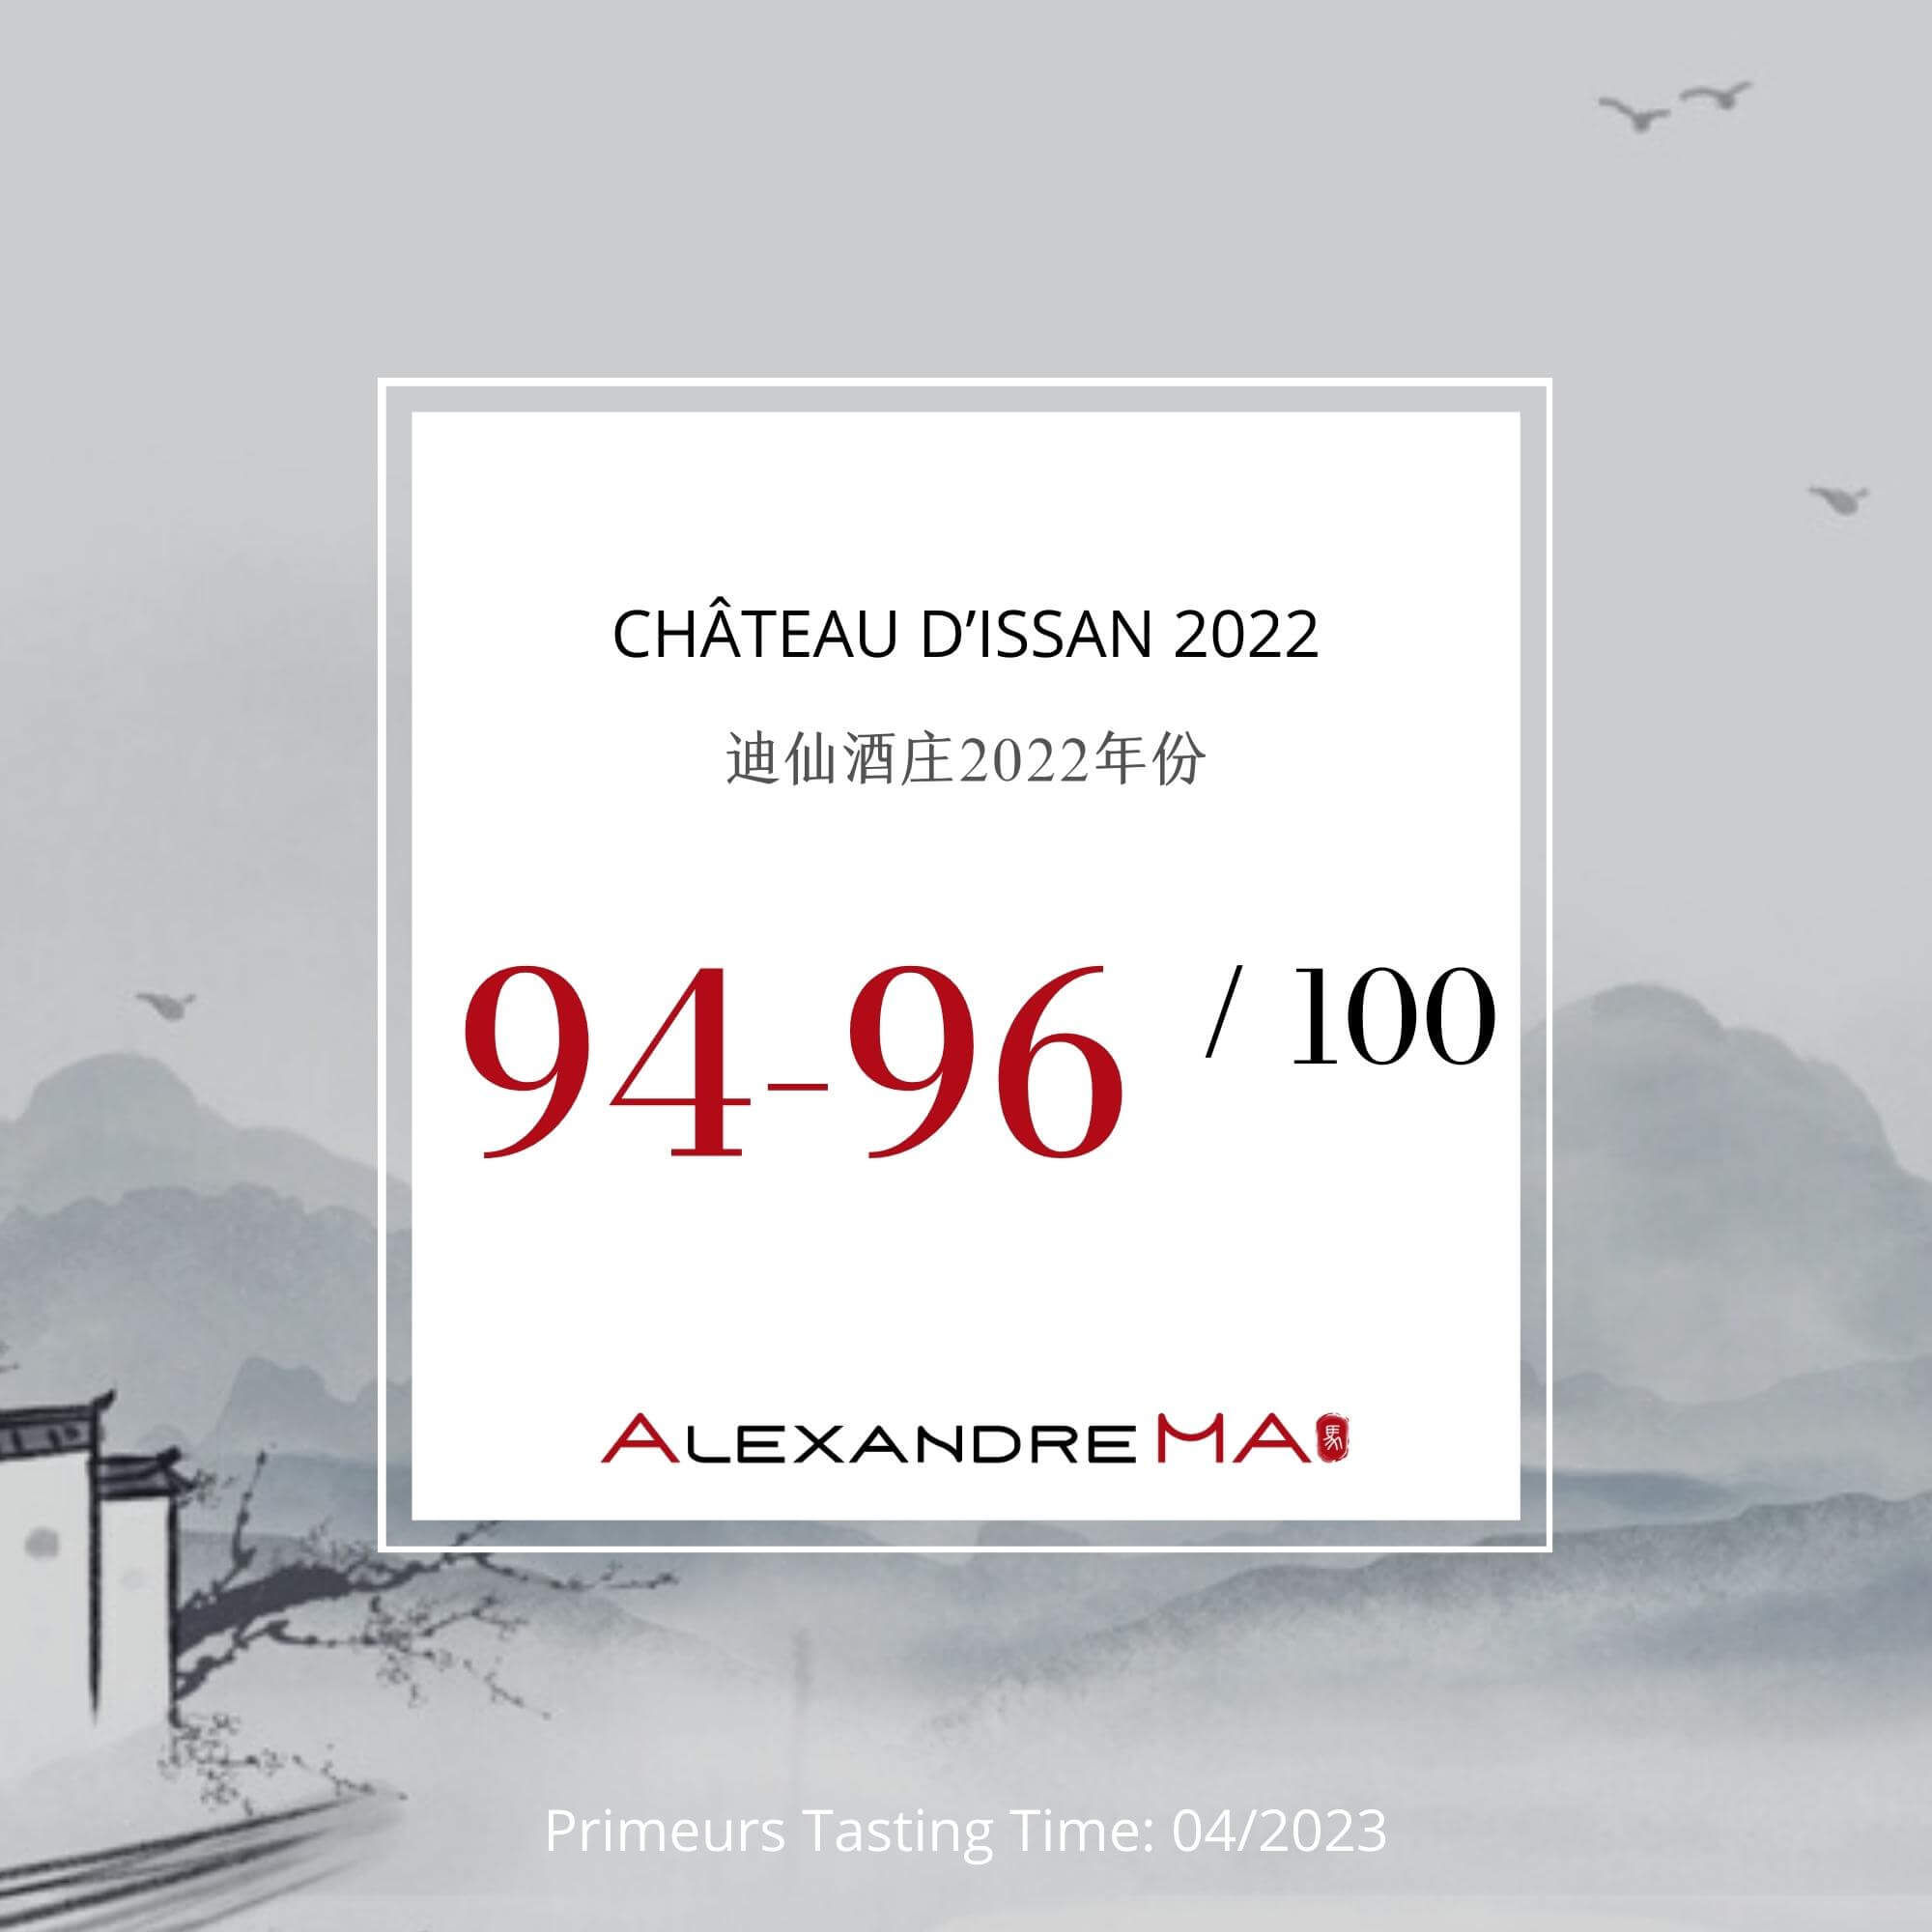 Château d’Issan 2022 Primeurs - Alexandre MA